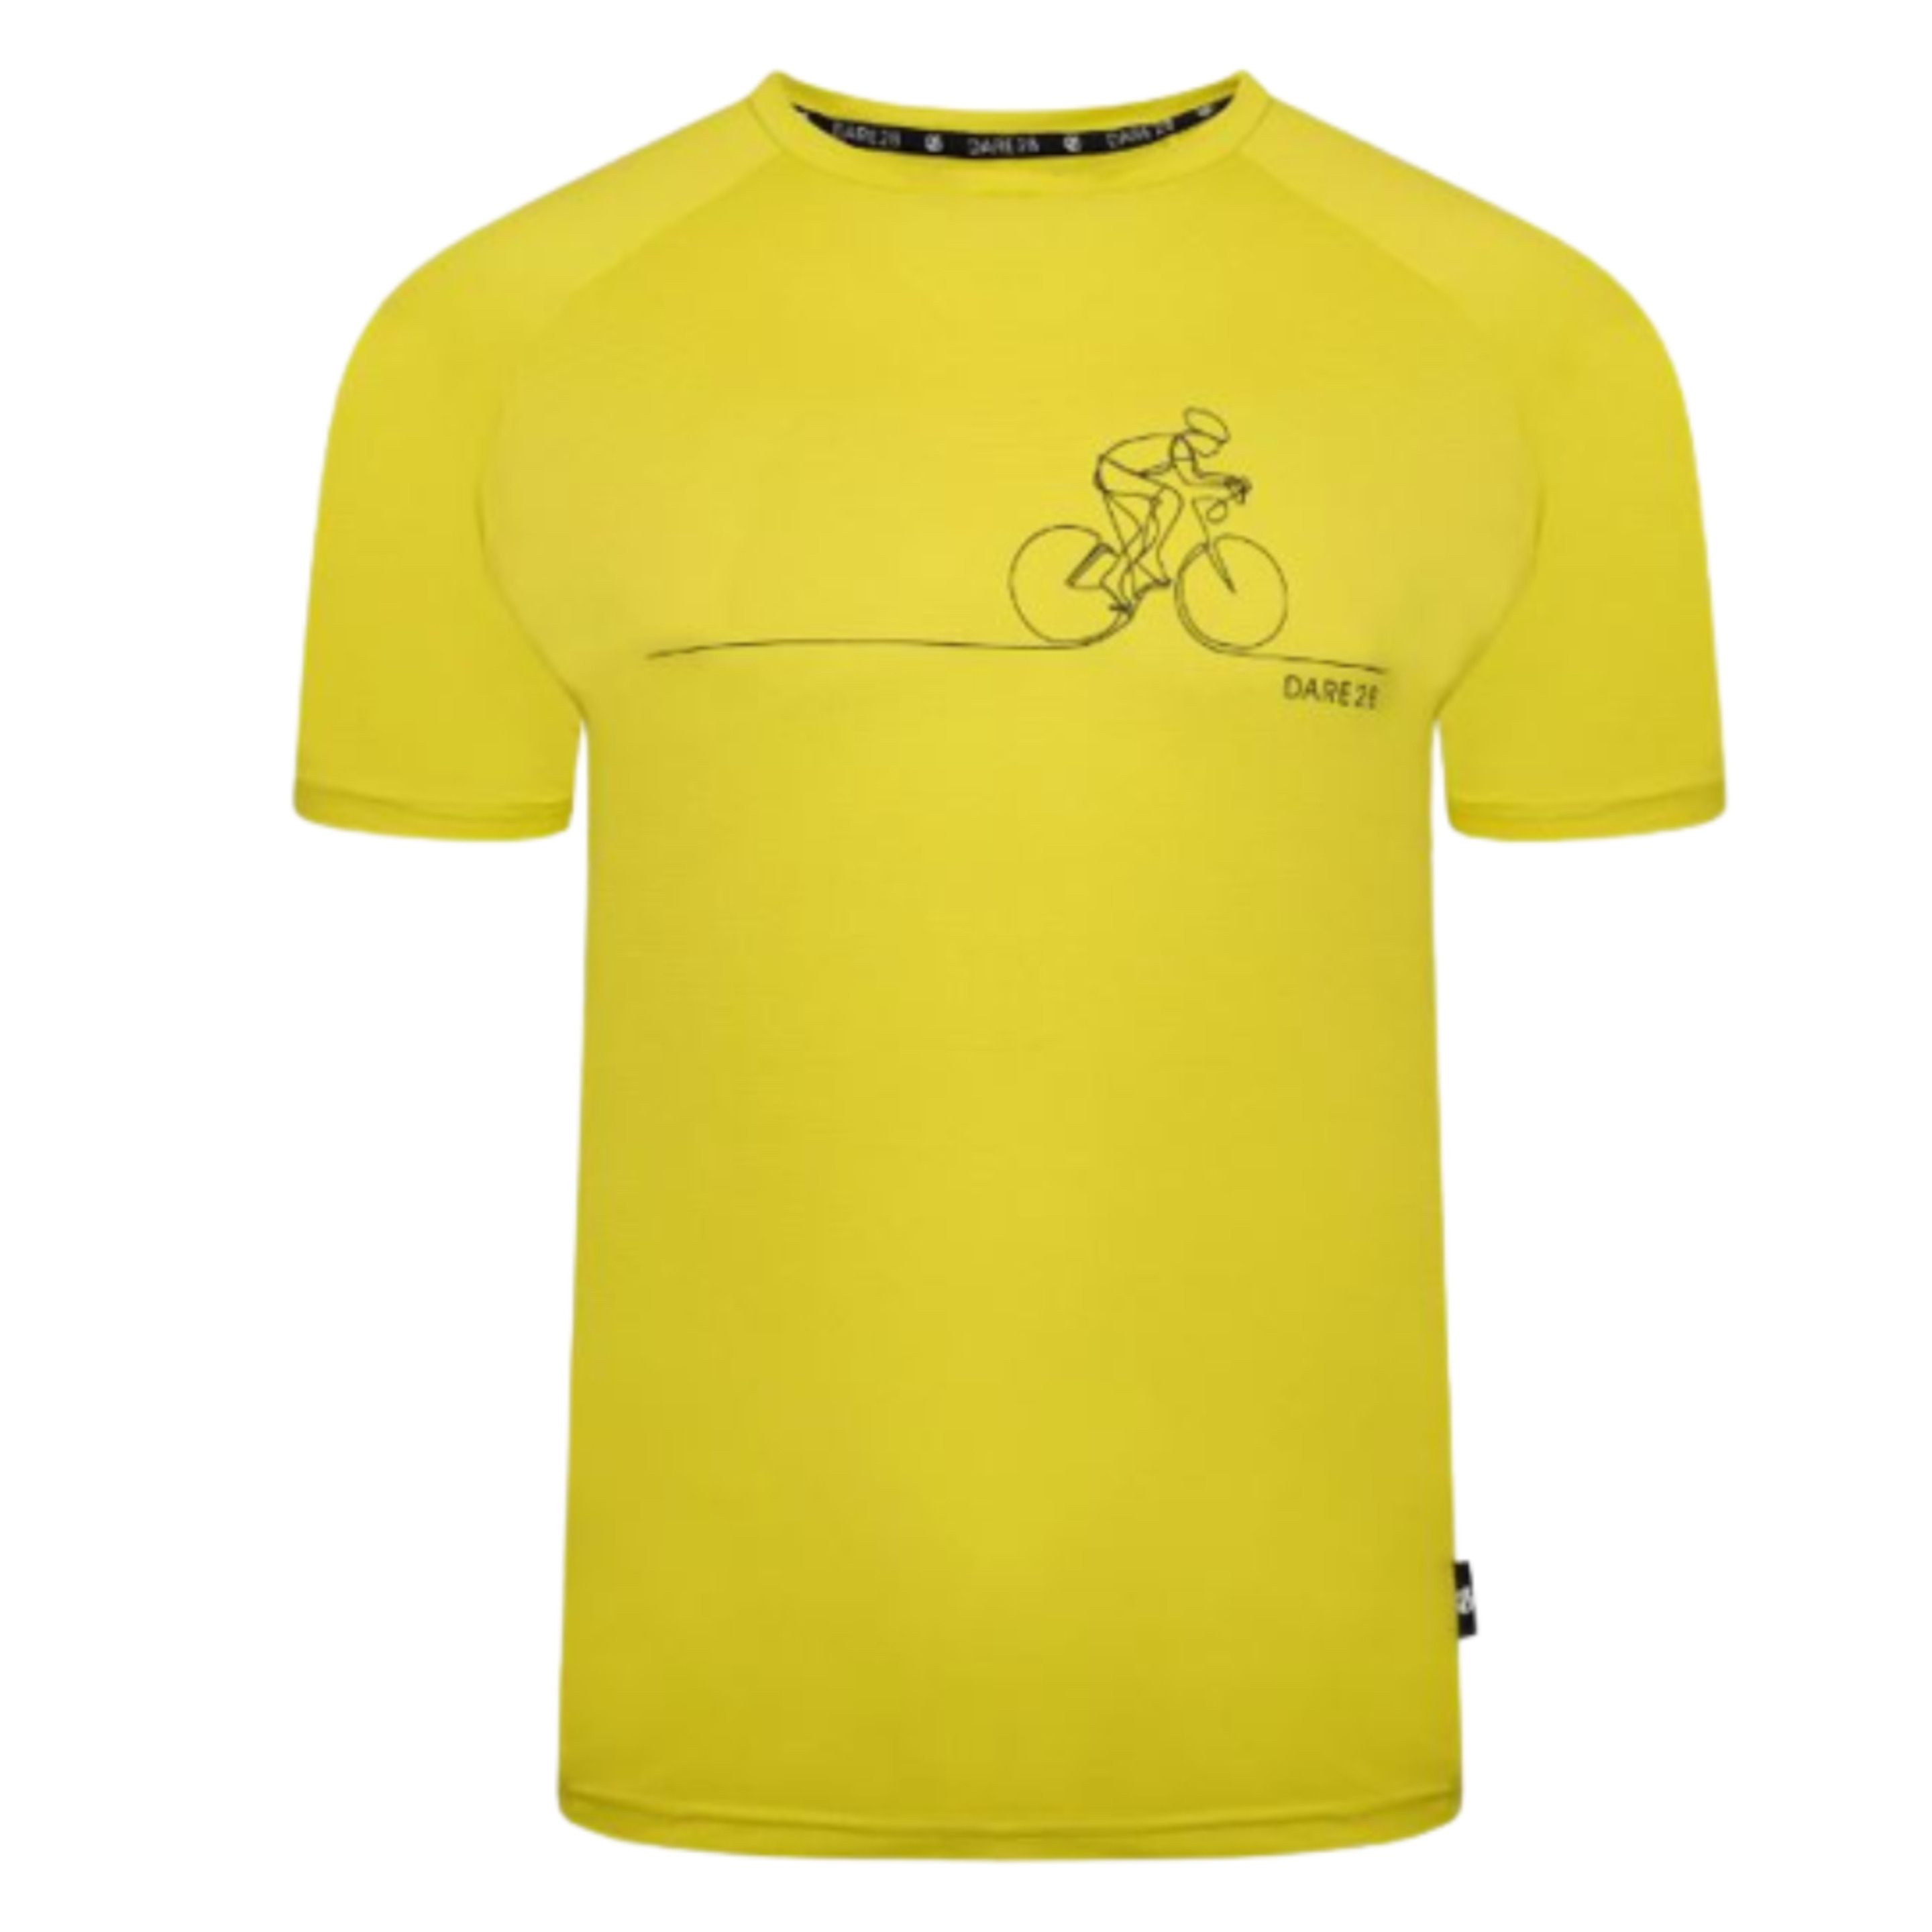 Dare2b Rightous Iii Tee Men's T-shirt. Dmdt597 - amarillo-fluor - 